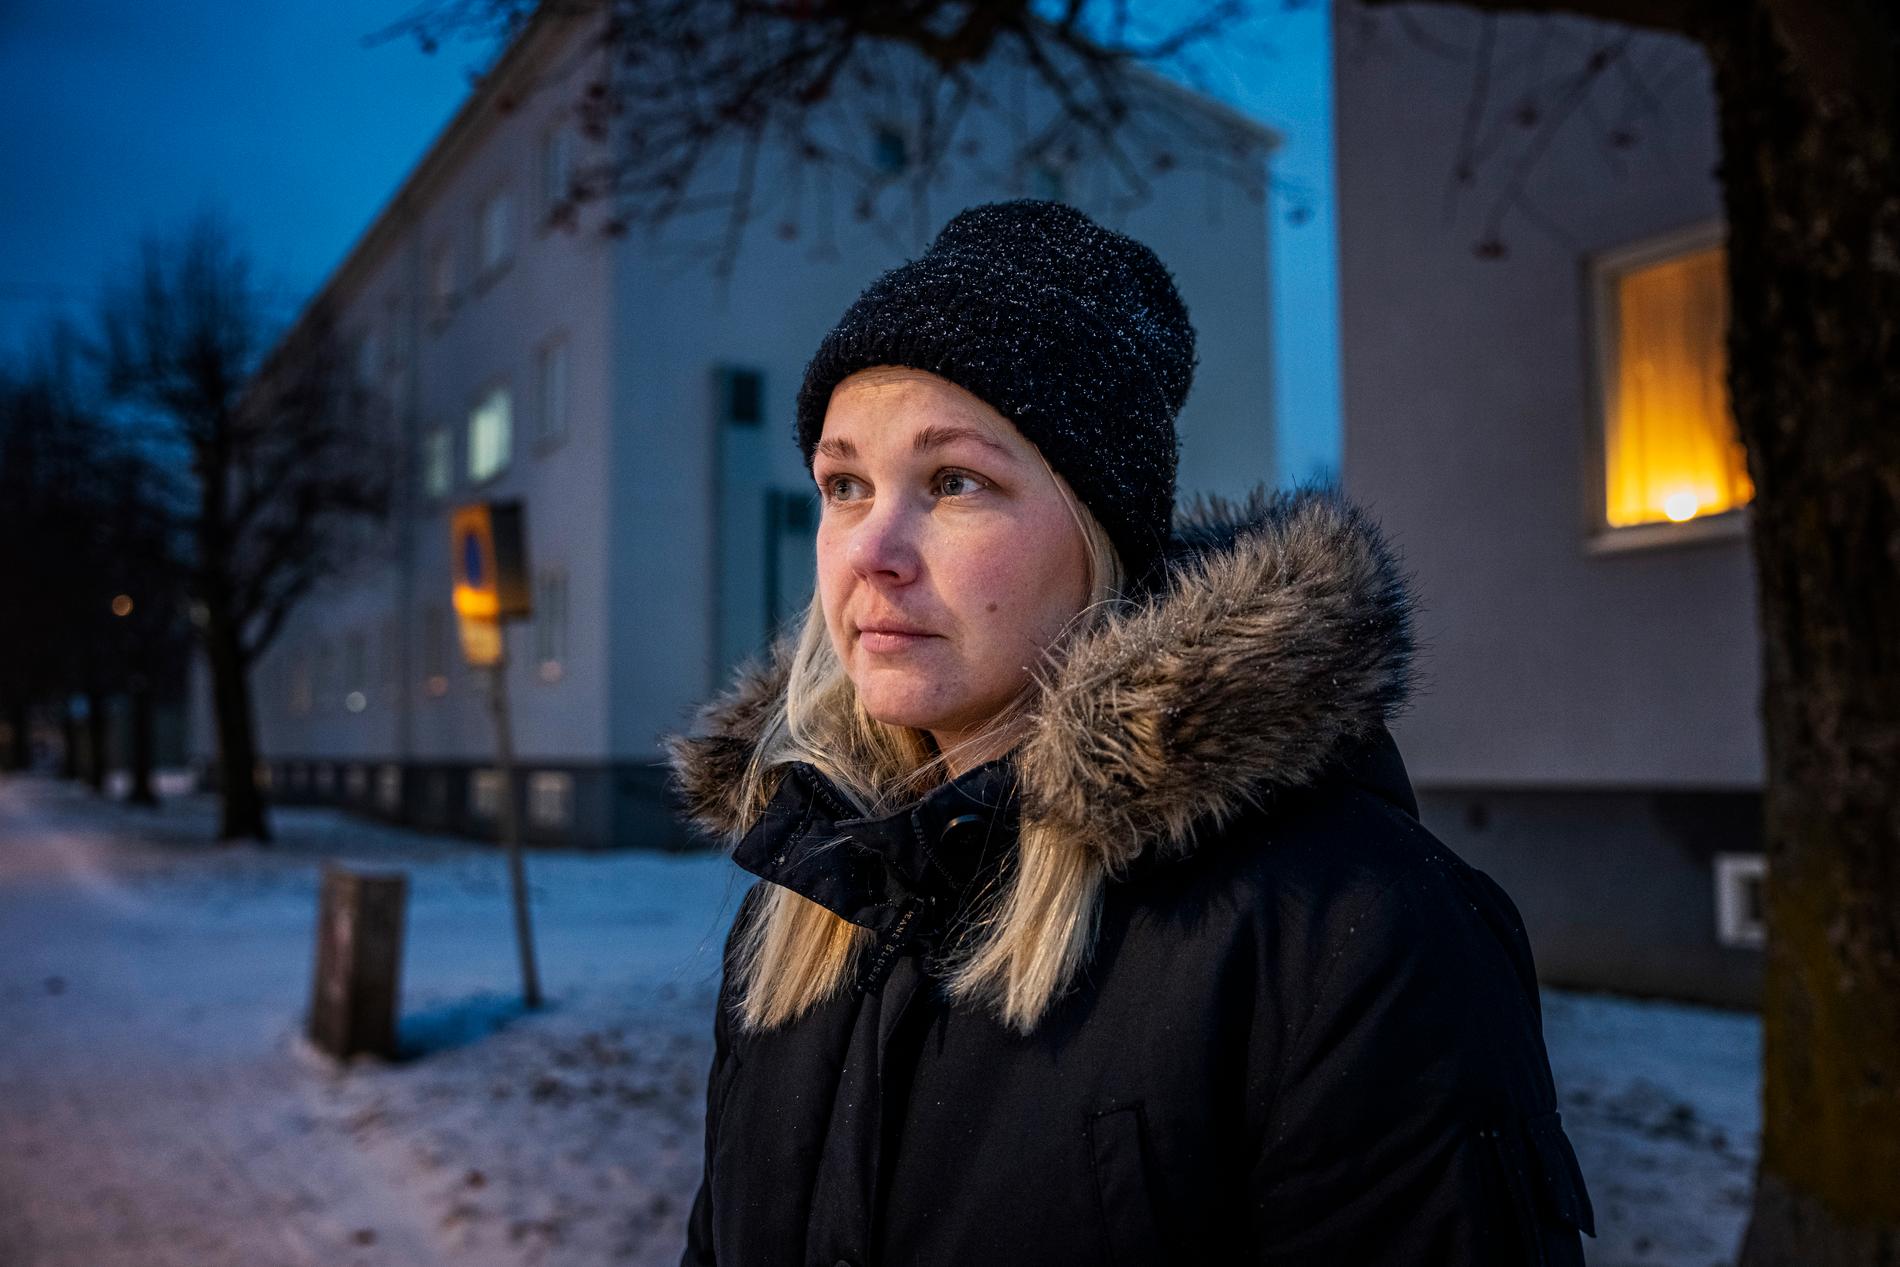 Desiree har känt sig trygg i Norrköping i hela sitt liv. Men nu är ho orolig. 